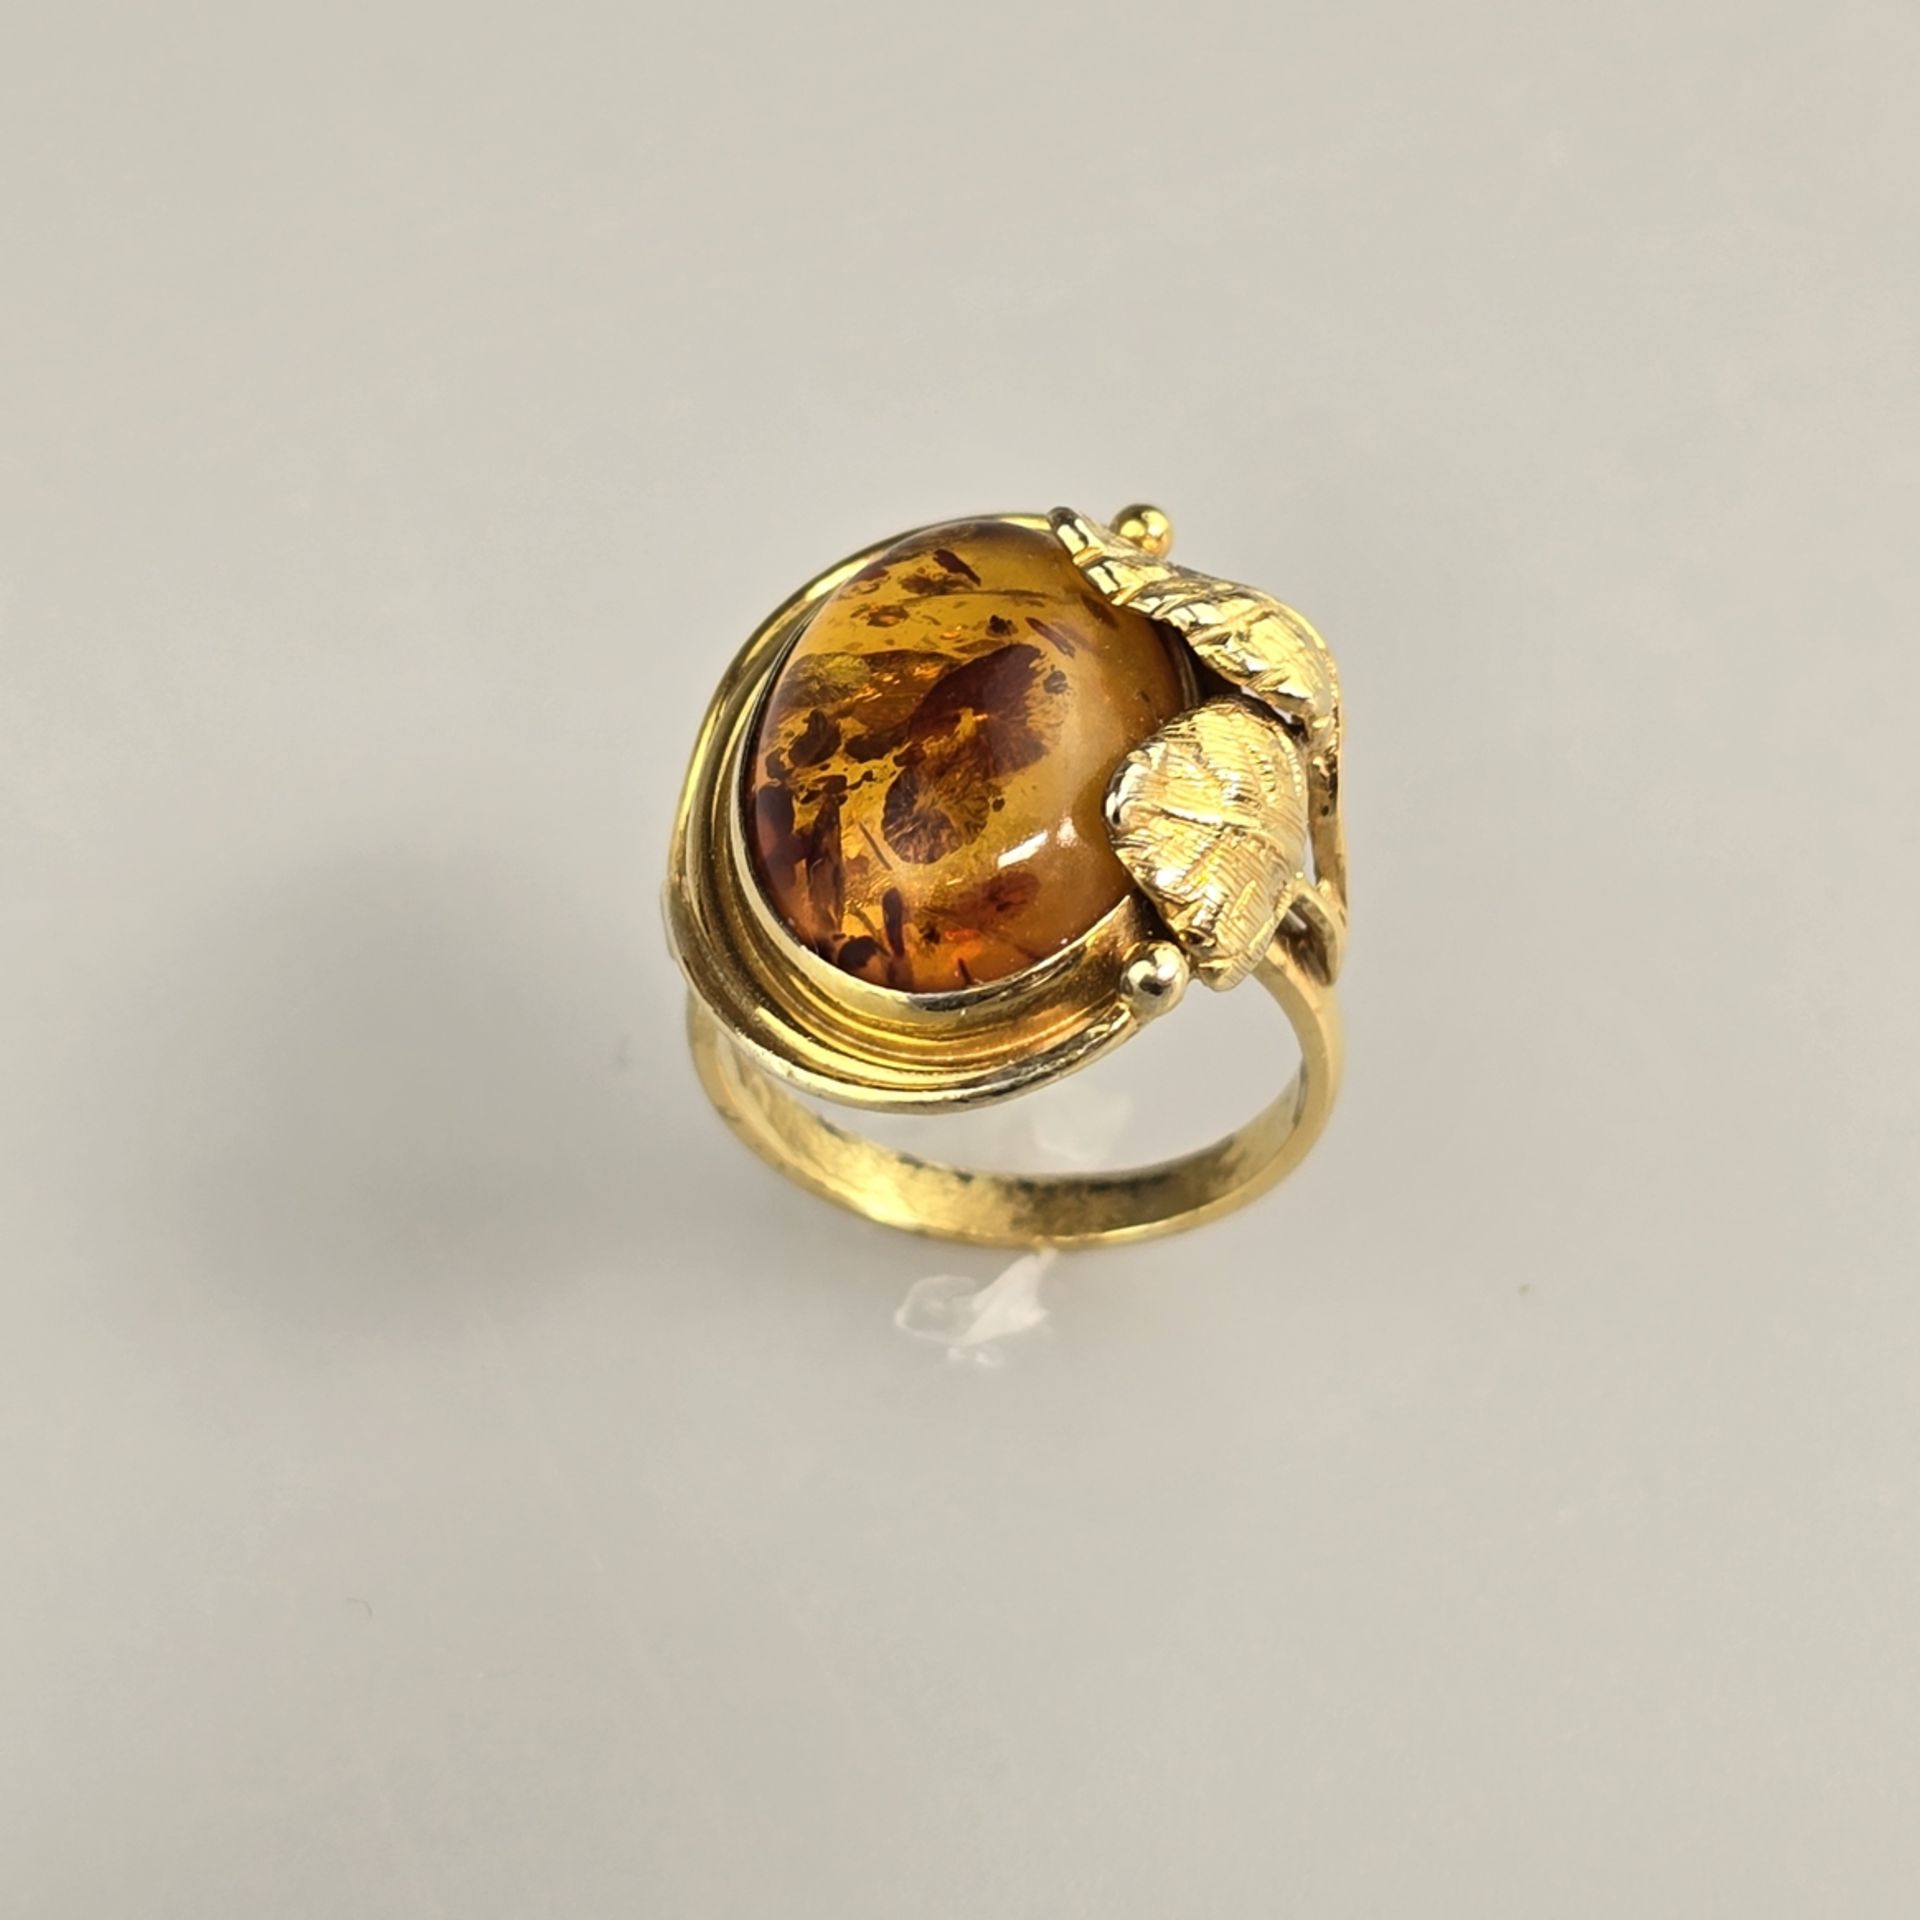 Bernsteinring - Silber 925/000, vergoldet, außen gestempelt, Bernstein von ca.18 x 12 mm, Ringgröße - Bild 3 aus 8